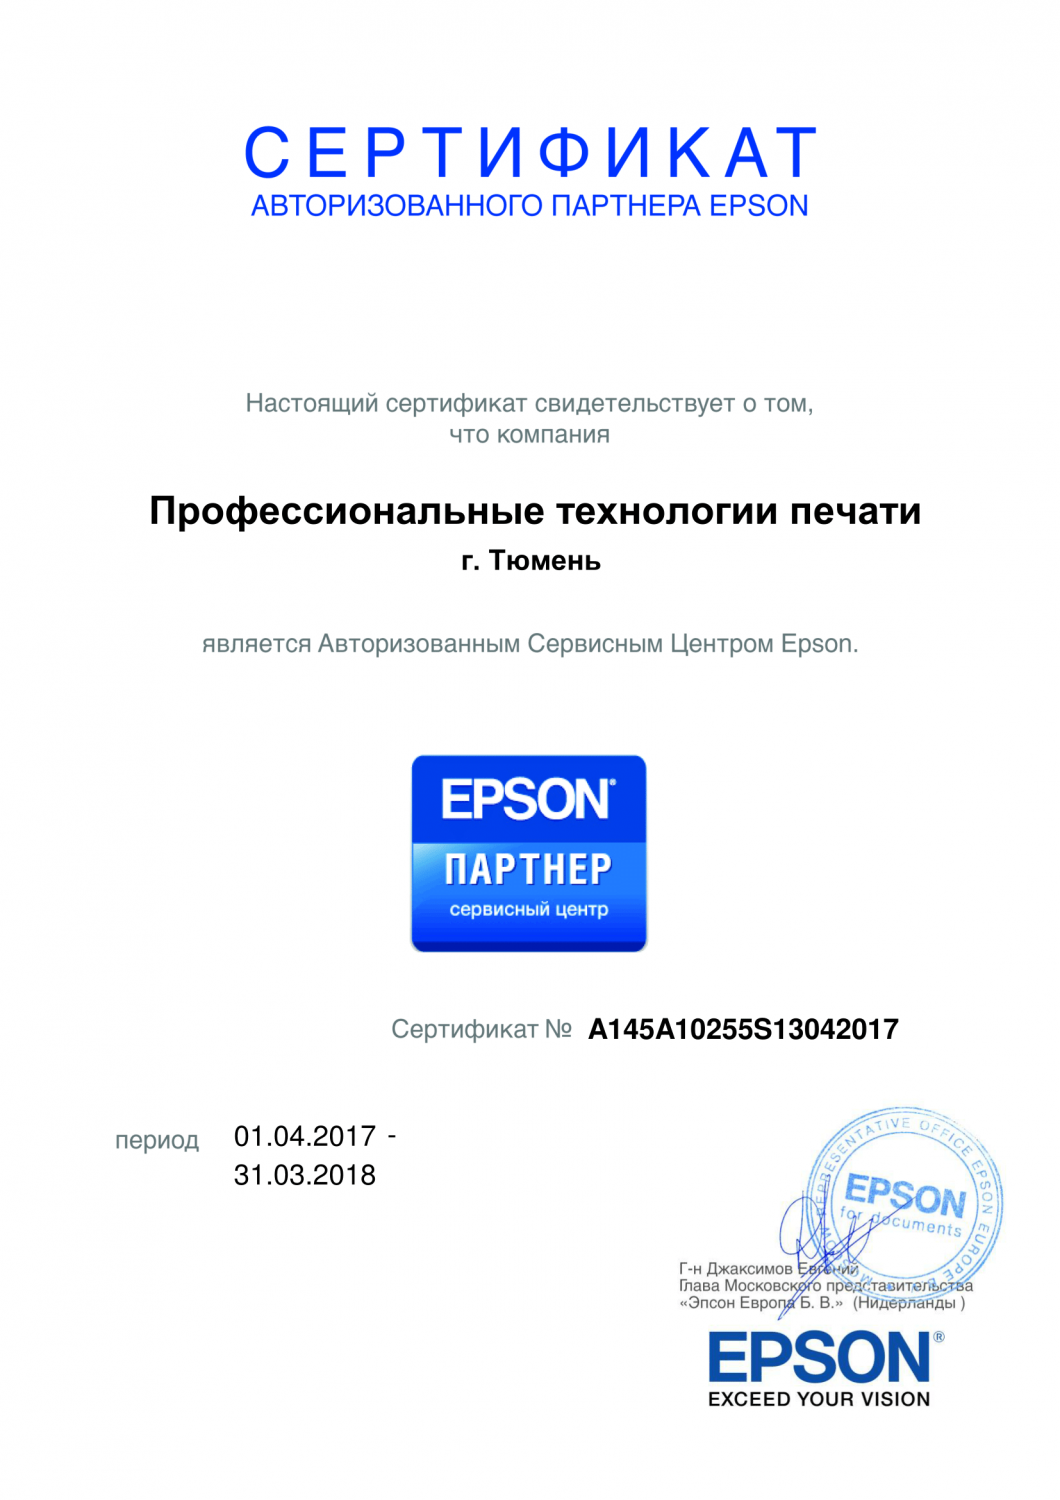 Сертификат EPSON. Авторизованный Сервисный Центр